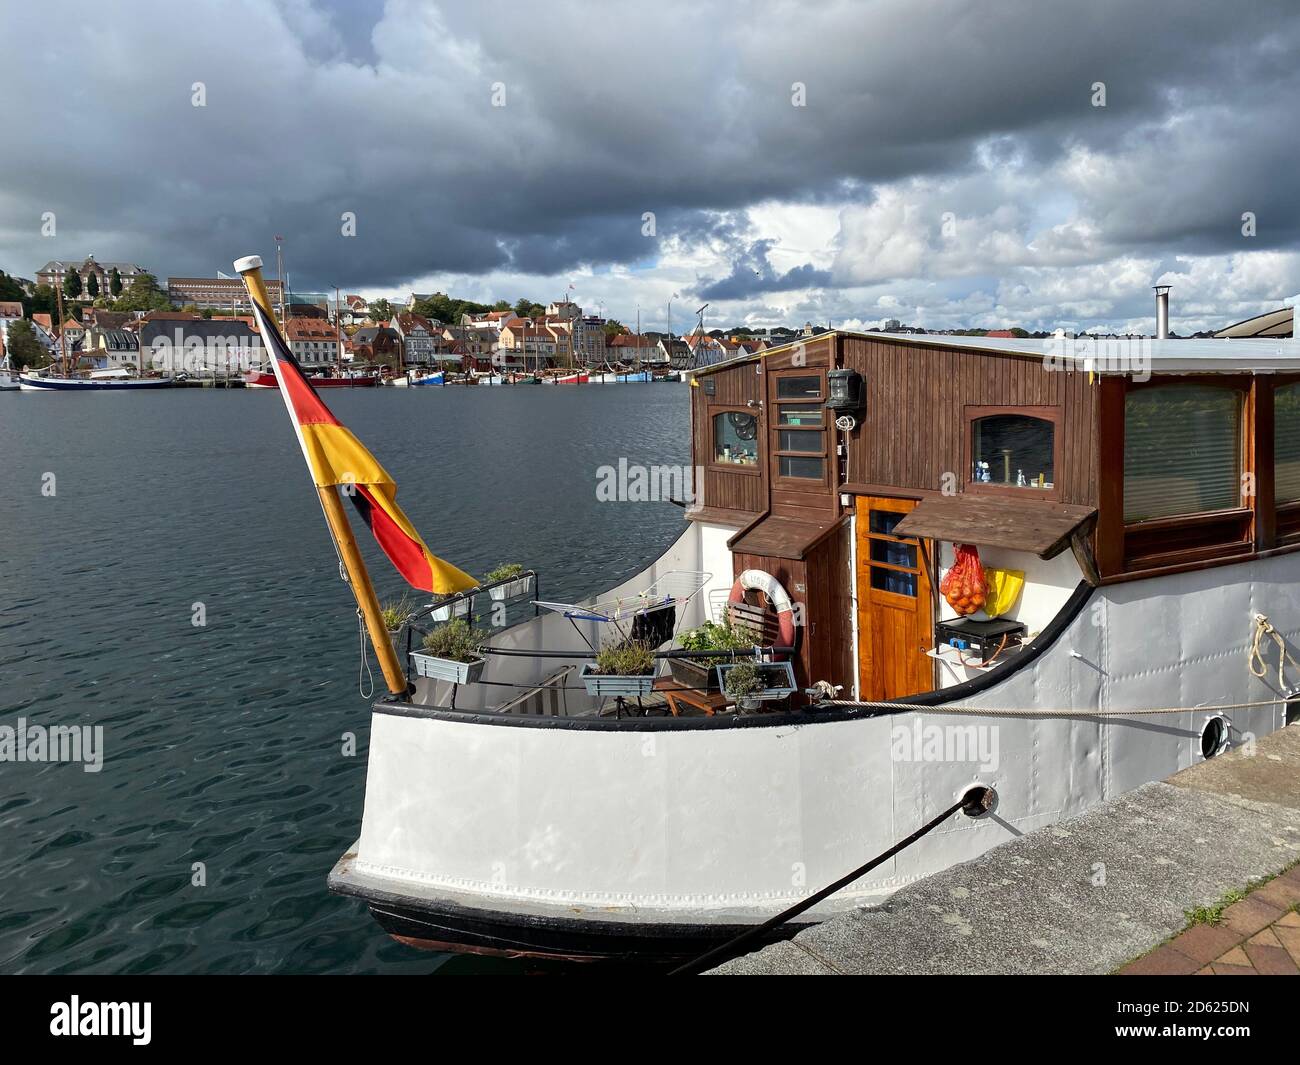 Houseboat, Residential Ships, Flensburg Stock Photo